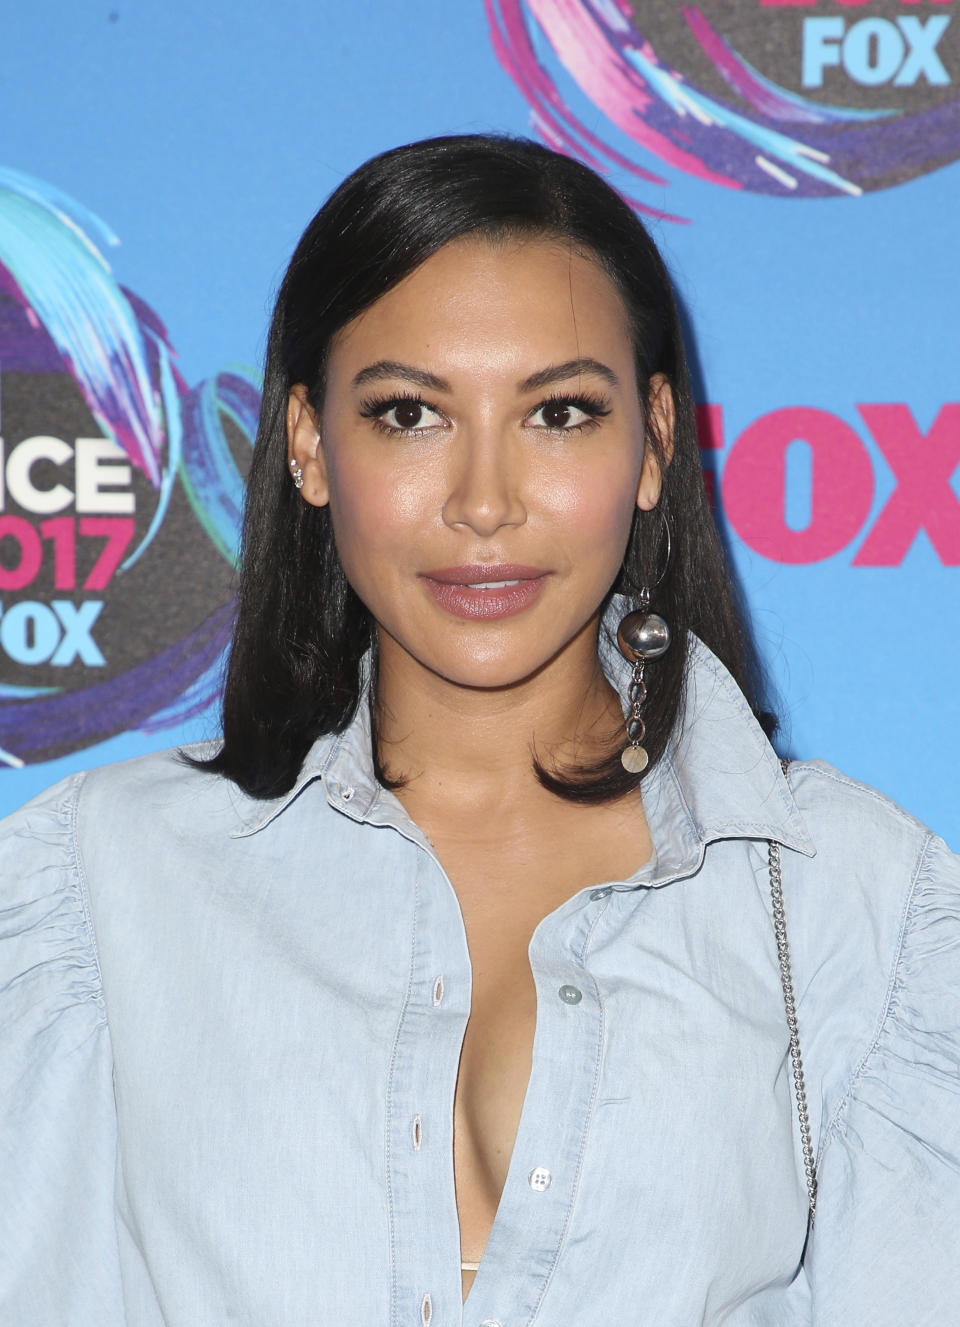 Naya Rivera, che nella serie "Glee" ha interpretato la bella Santana Lopez dal 2009 al 2015, ha un solo figlio - Josey Hollis - avuto dall’ex marito, Ryan Dorsey da cui si è separata nel 2018. (Credit: Faye Sadou/MediaPunch /IPX)